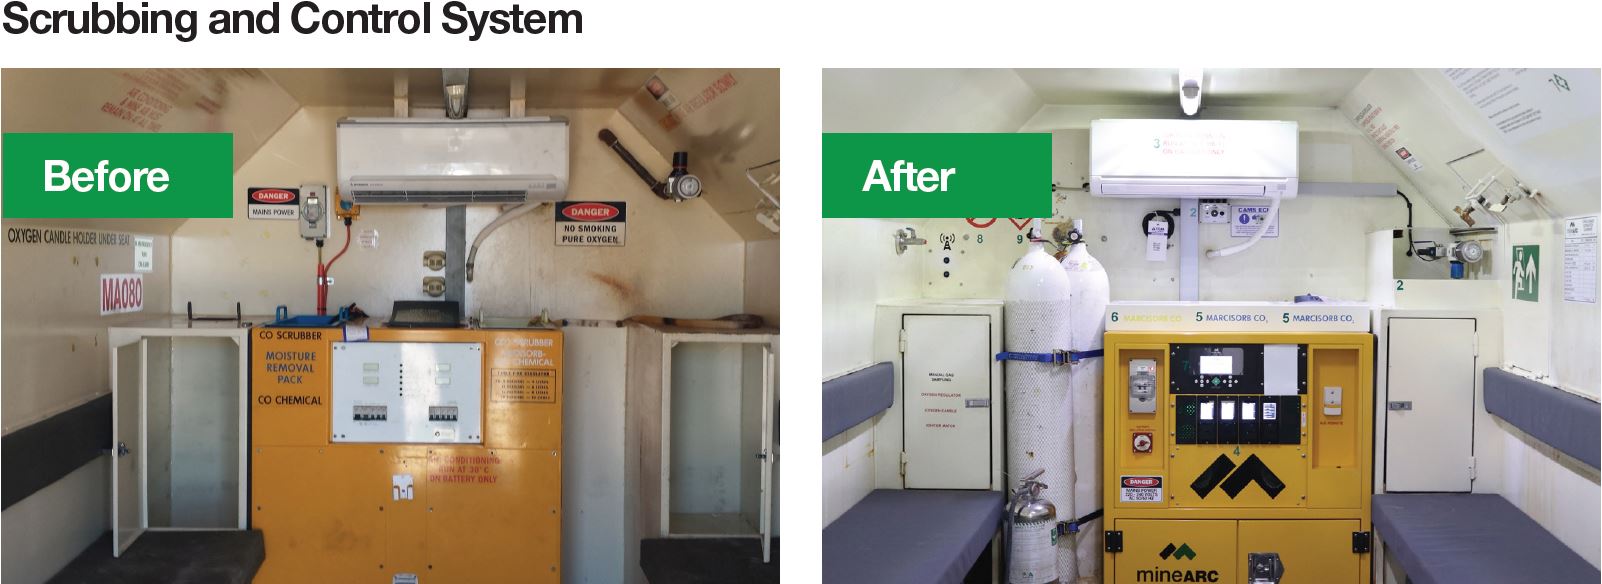 scrubbing and control system_refurbishment